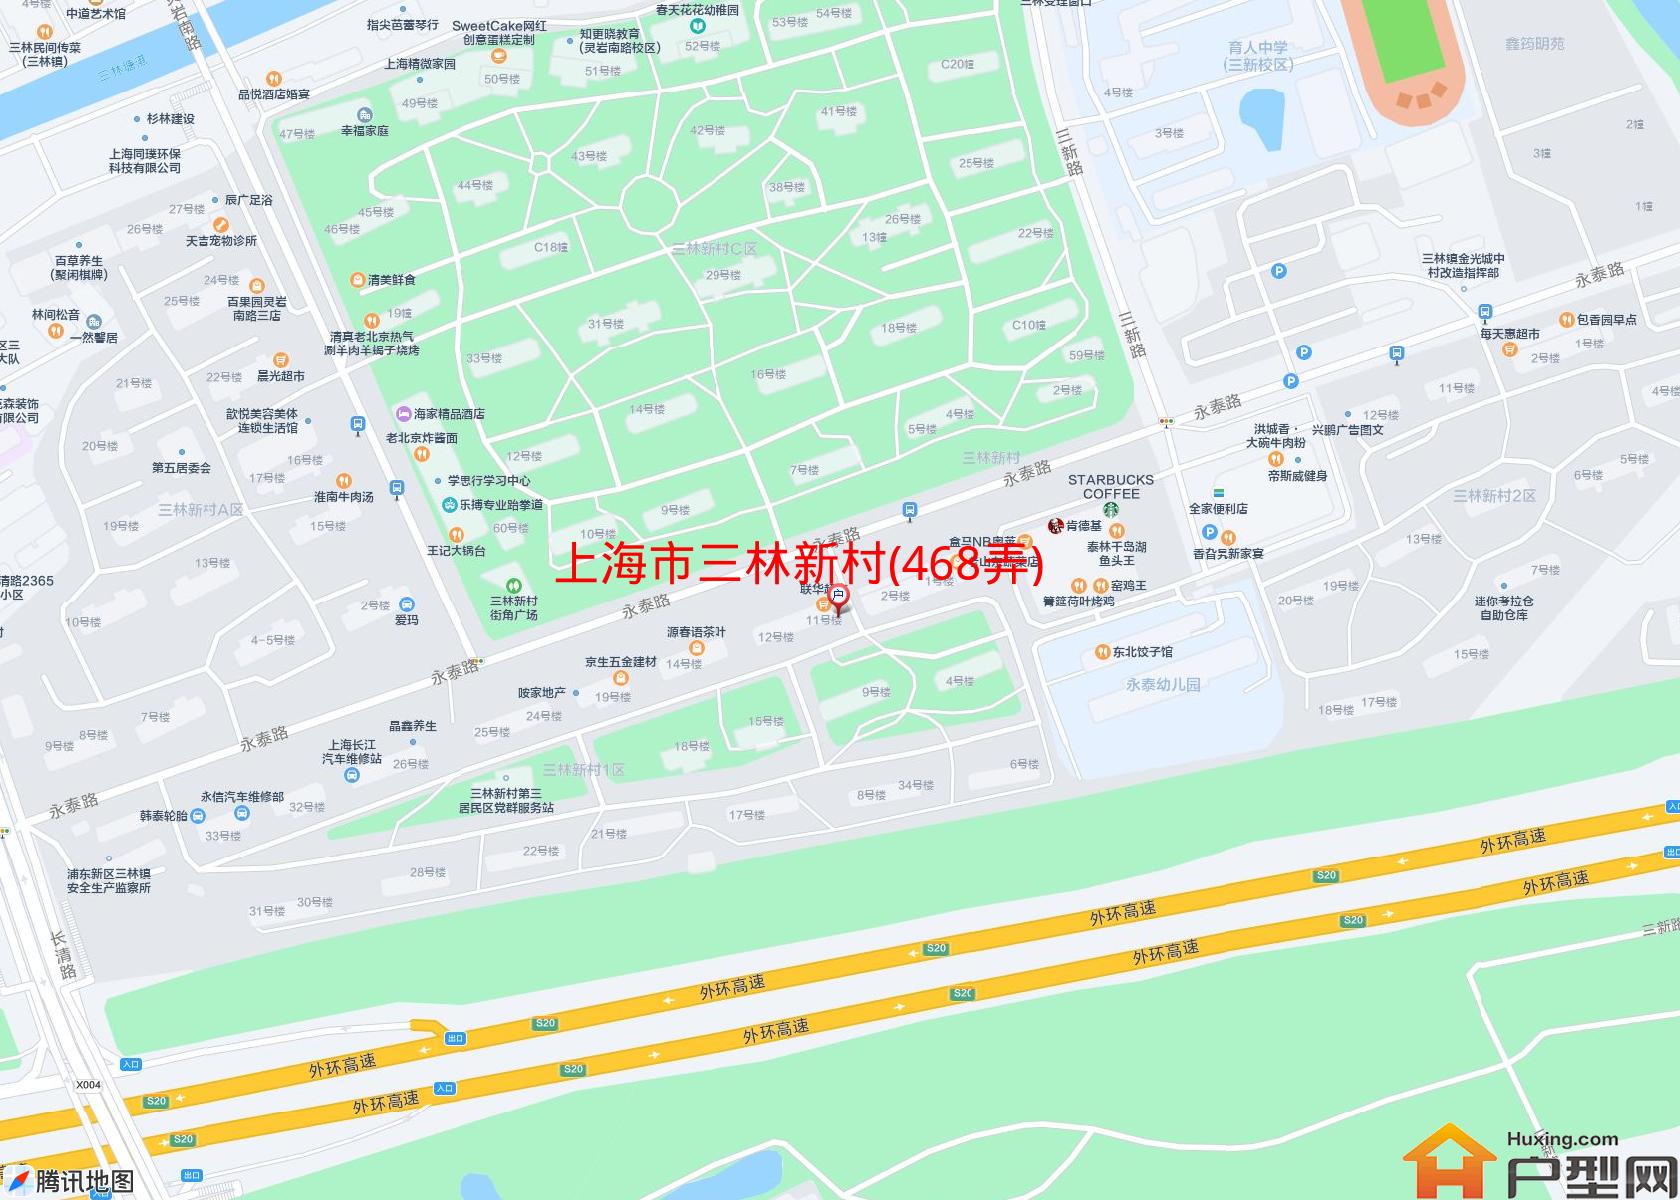 三林新村(468弄)小区 - 户型网